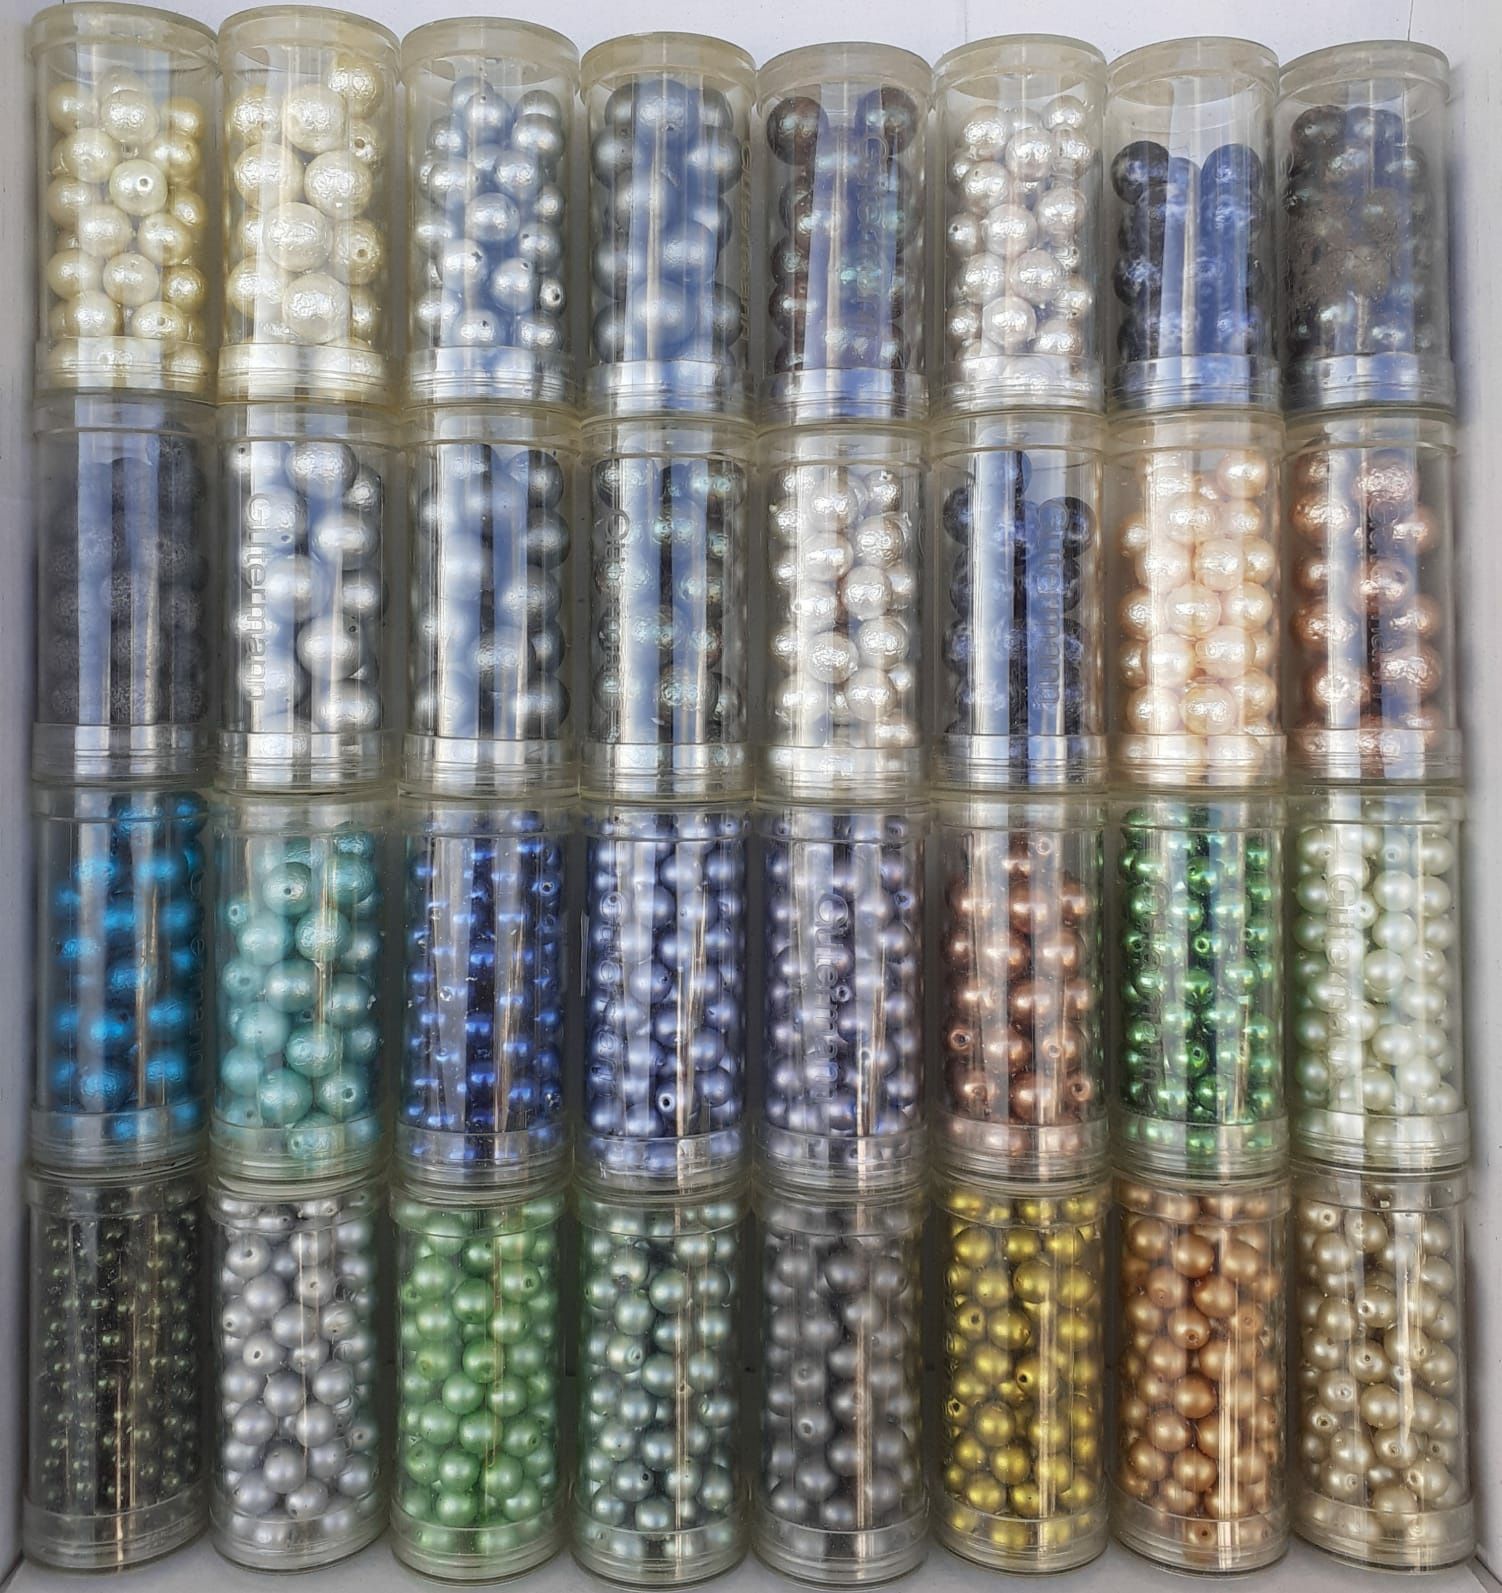 Missangas de qualidade Gutermann, glass beads.